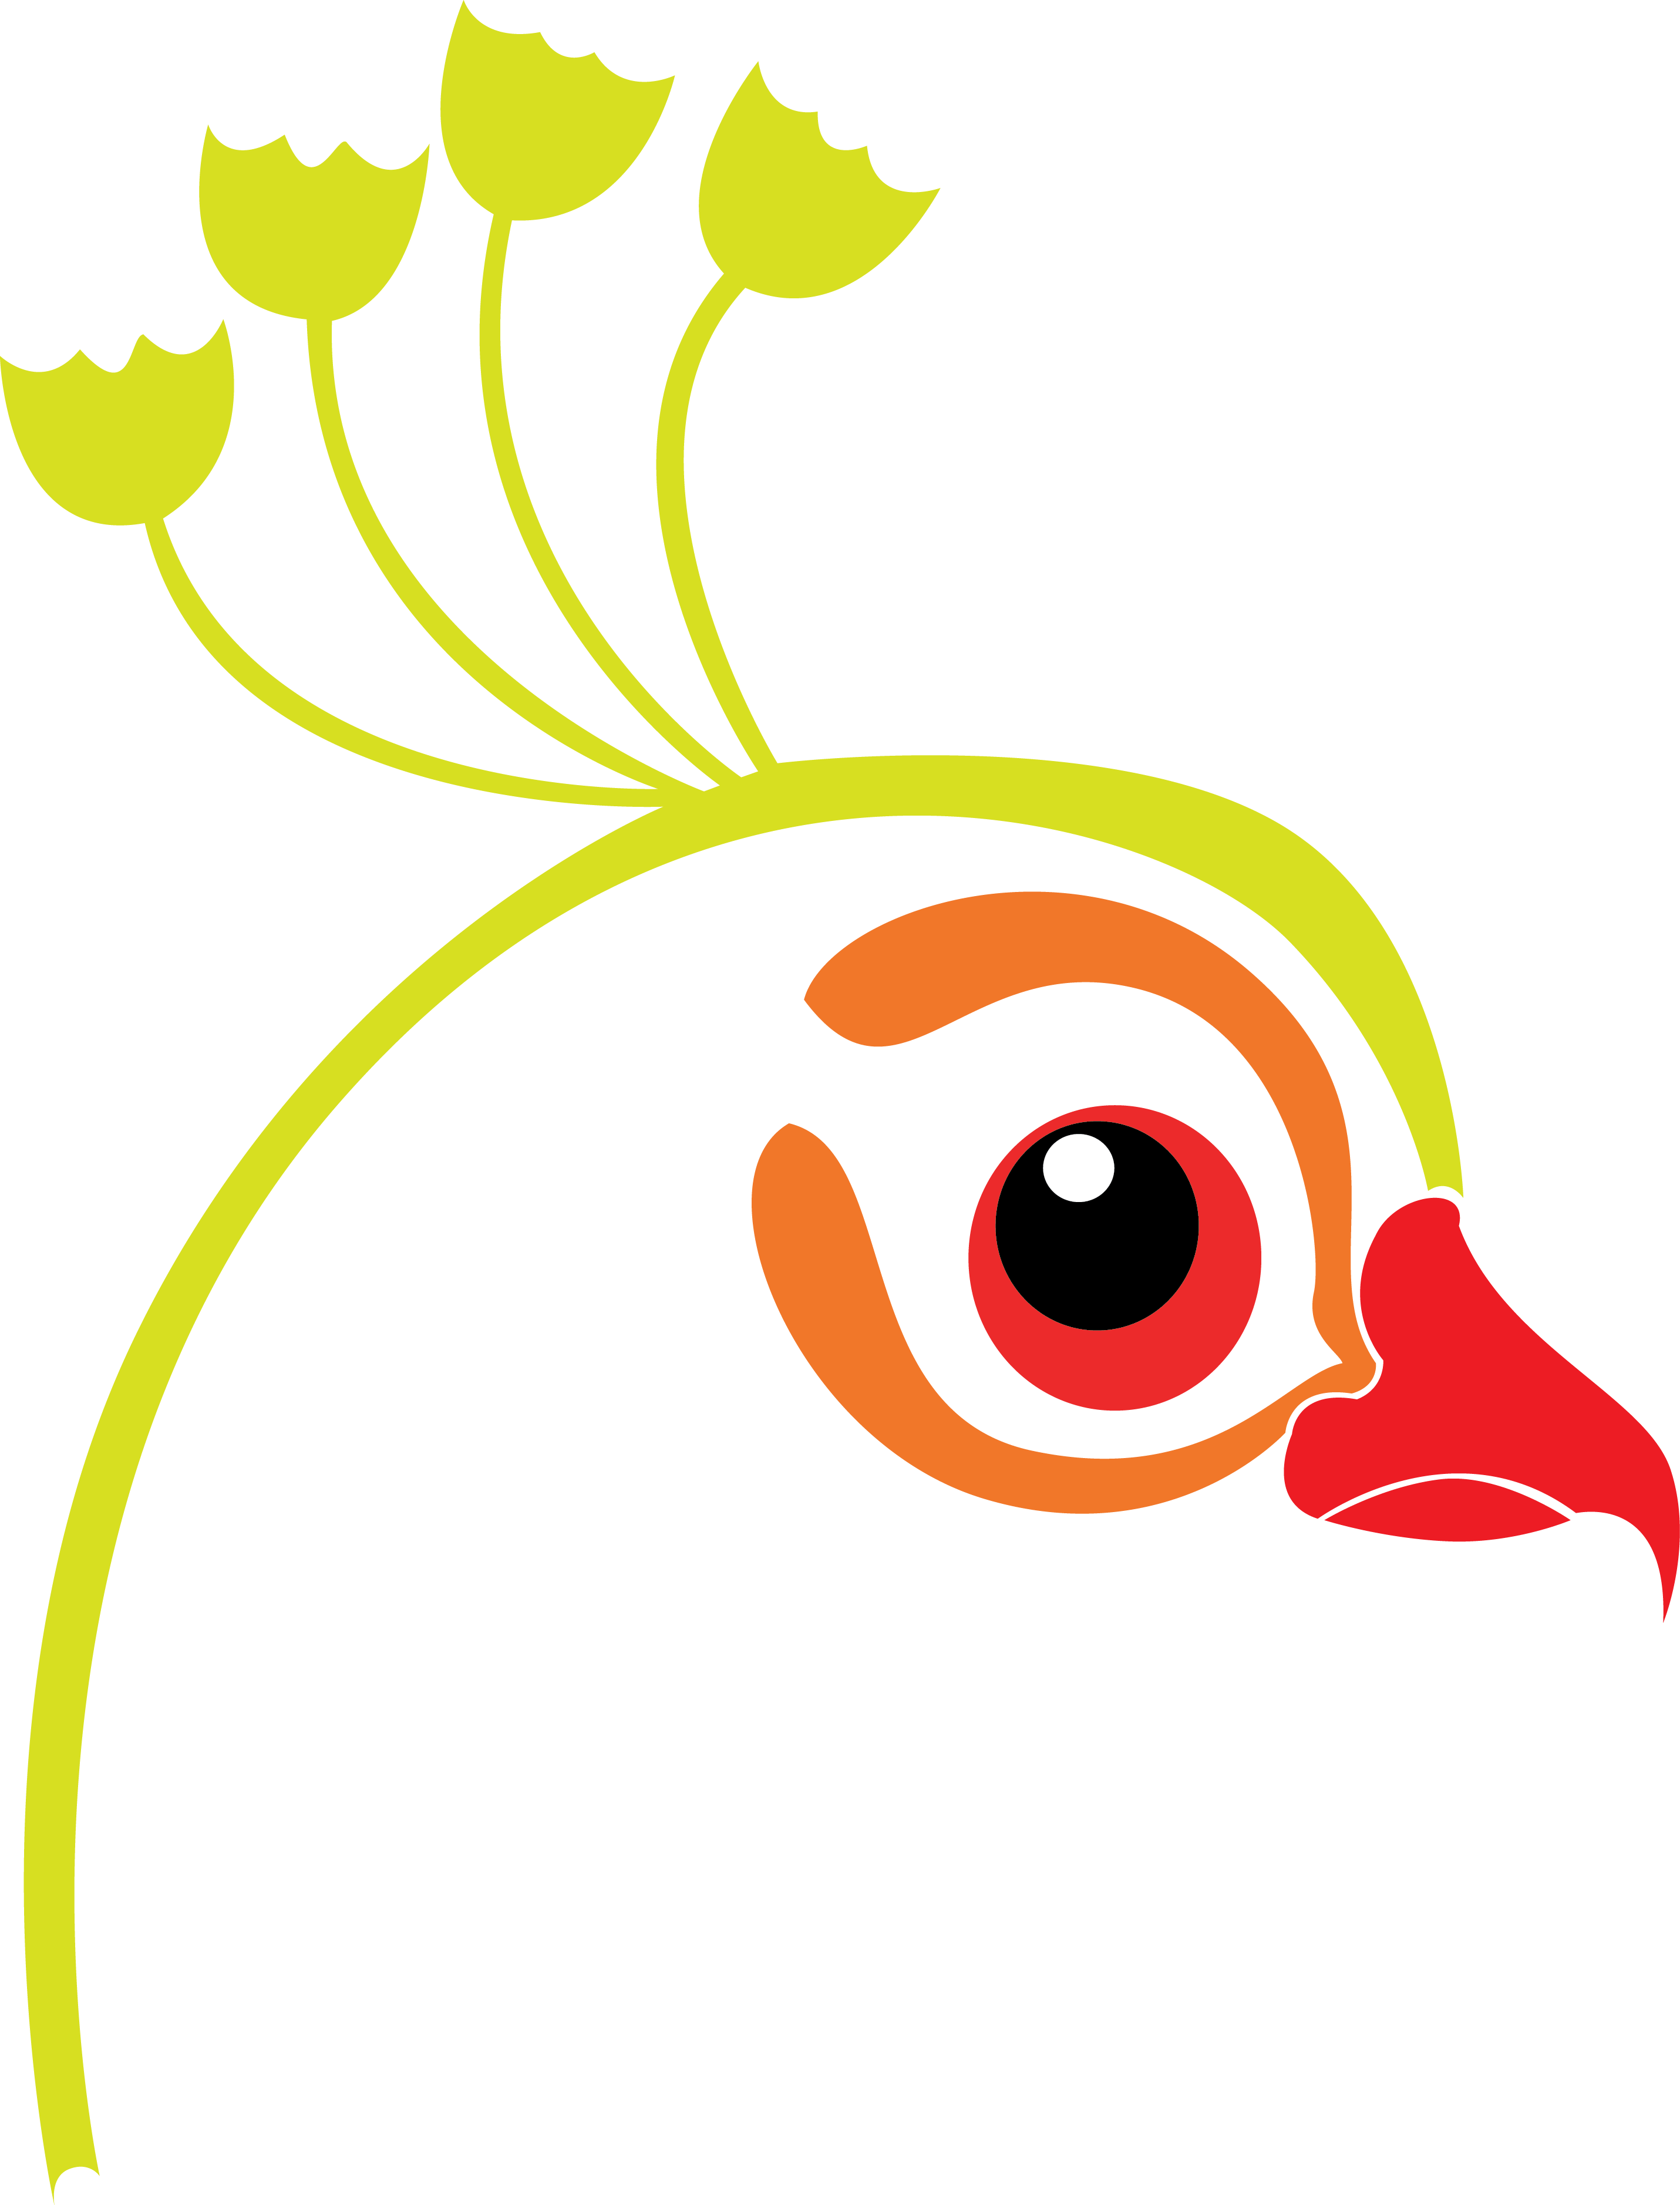 Peacock - Peacock (2861x3755)